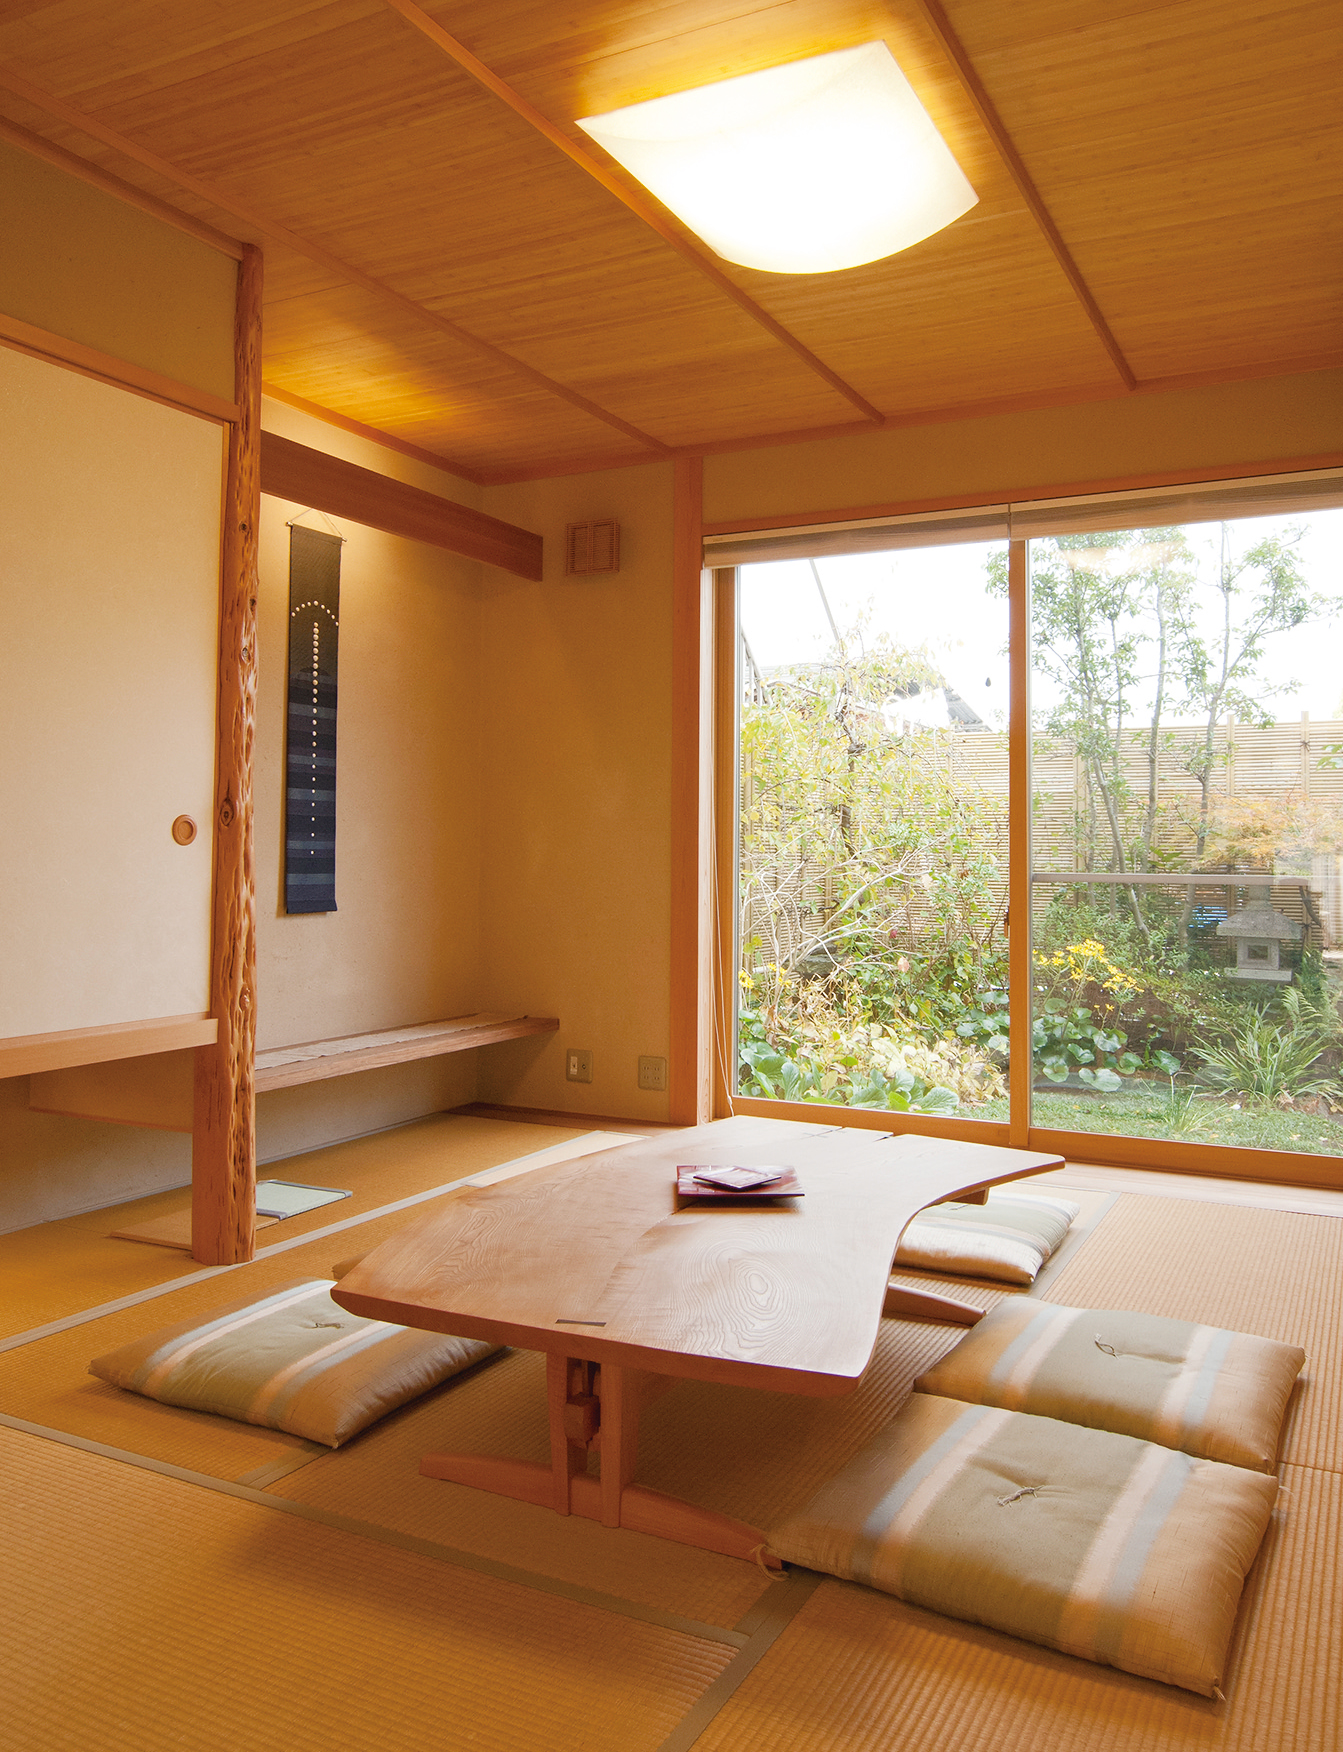 「奈良の木」の家が増えています